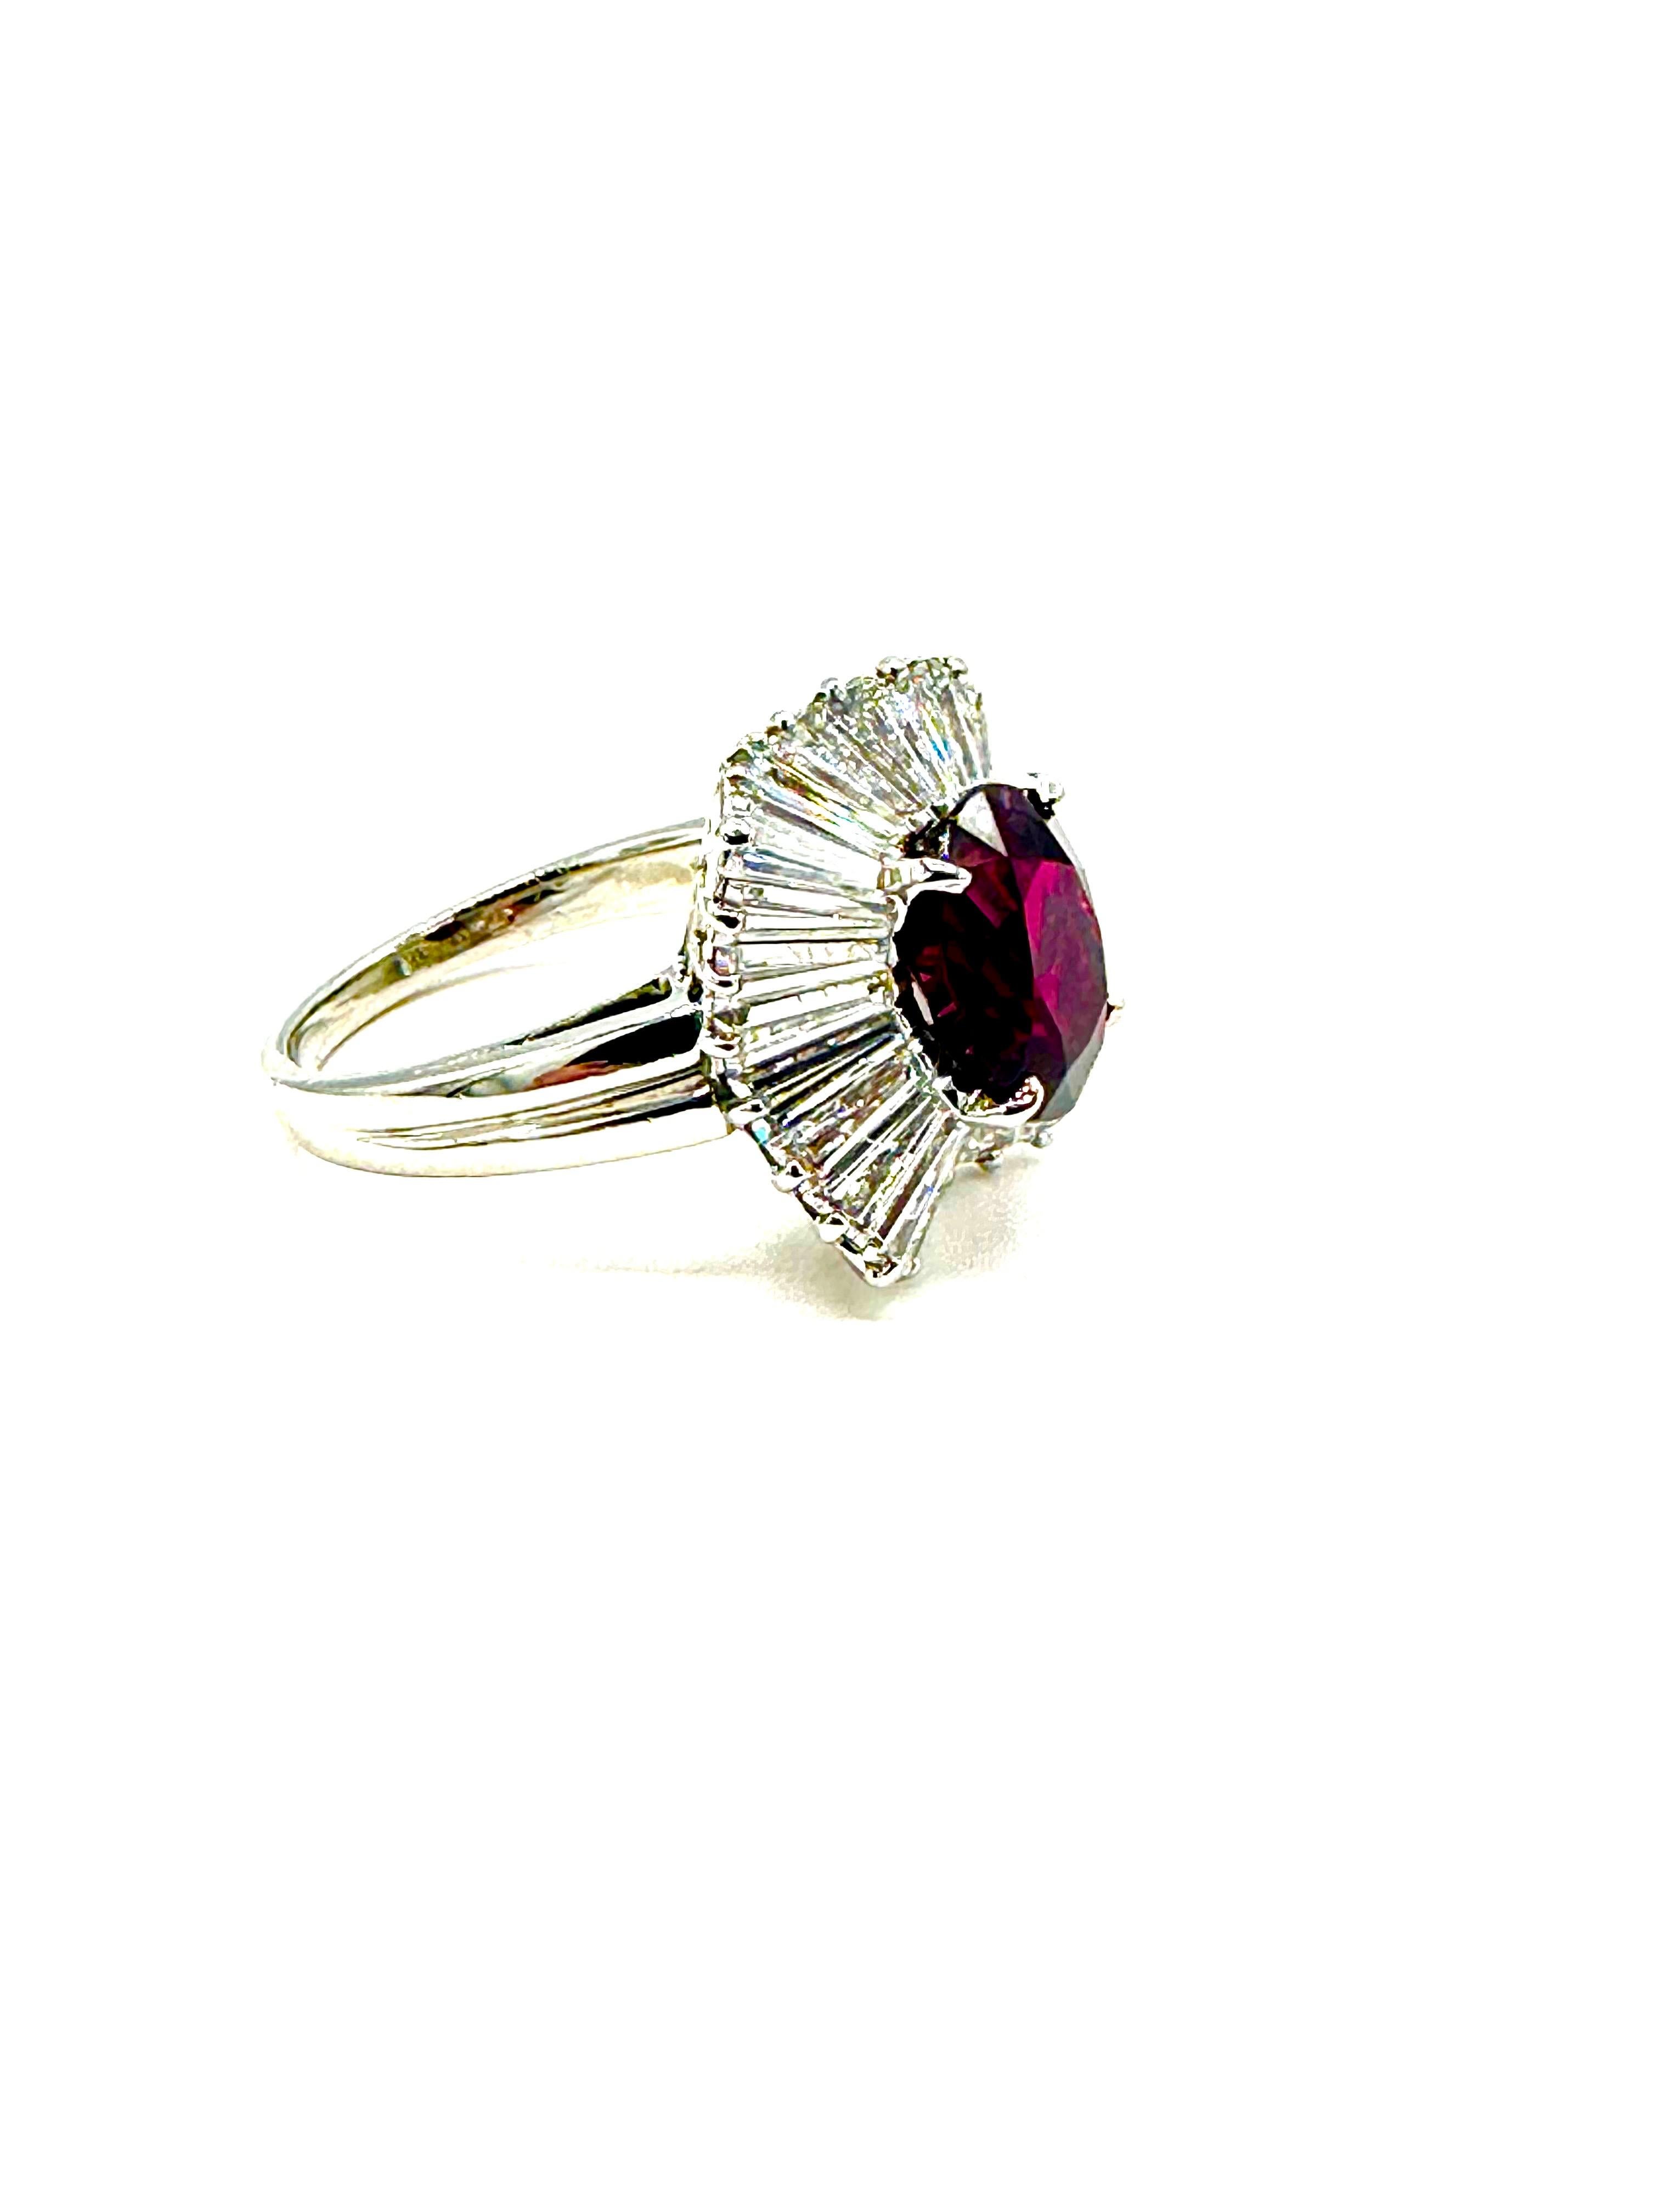 Dies ist ein atemberaubend schöner Ballerina-Ring mit Rubinen und Diamanten, der von dem berühmten Designer Oscar Heyman entworfen wurde!  Der natürliche Rubin von 3,87 Karat ist in vier Zacken gefasst. Eine einzelne Reihe von spitz zulaufenden